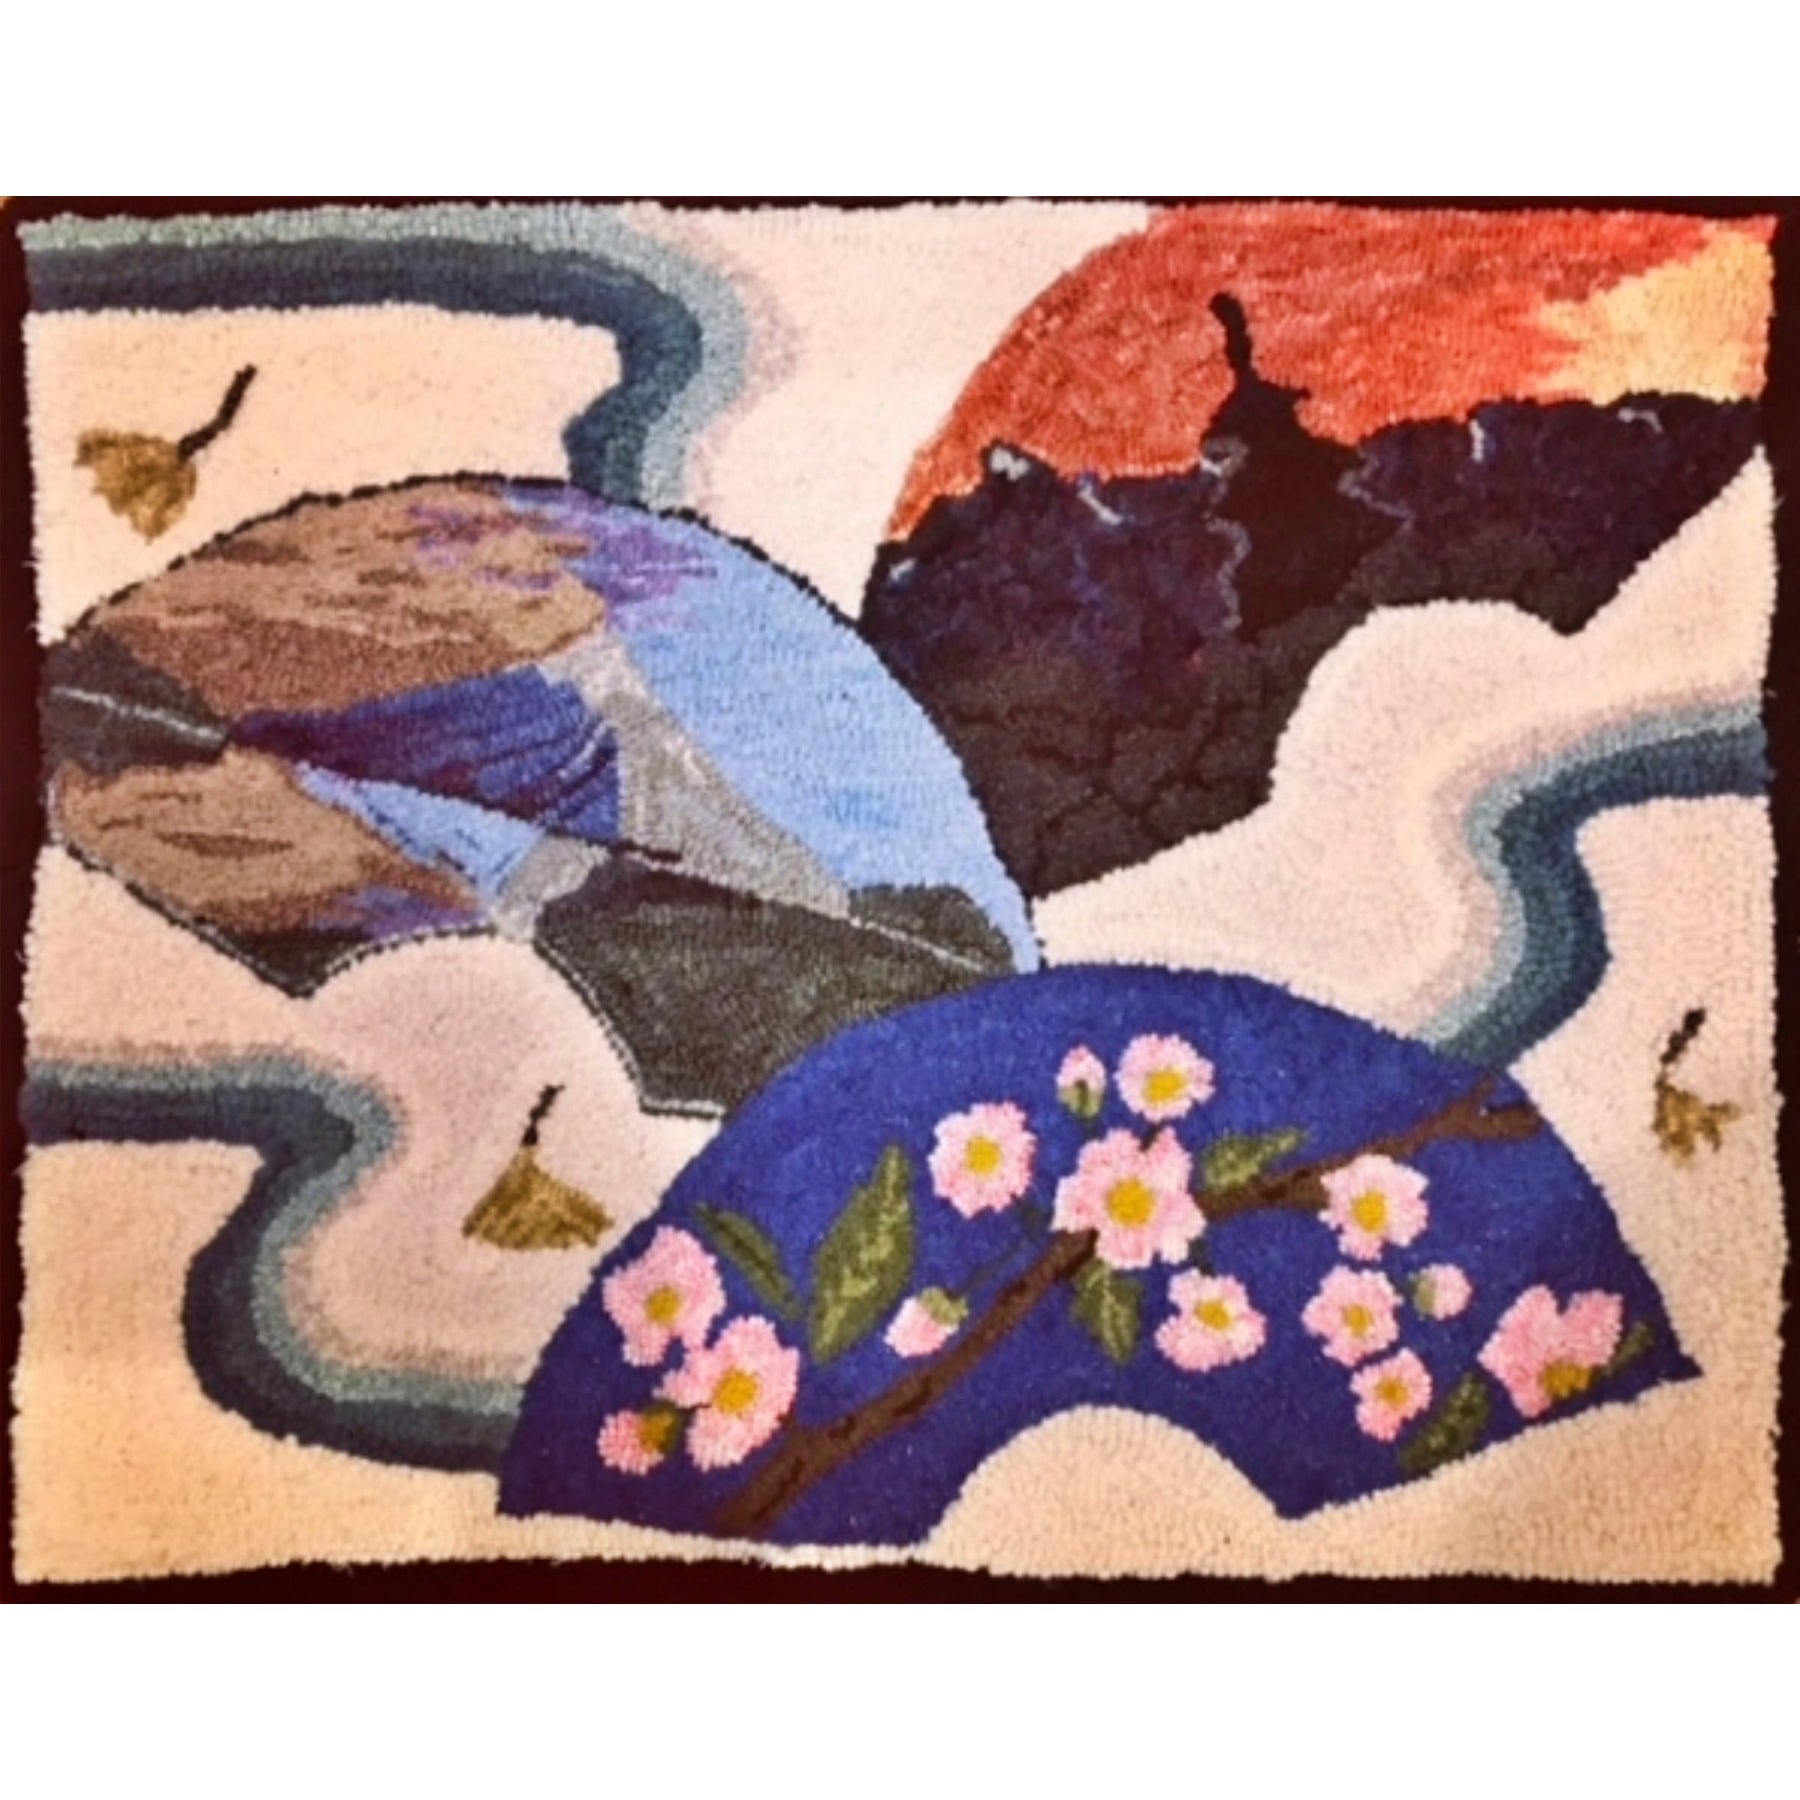 Beautiful Scenery in Japan, rug hooked by Ida Kelleher